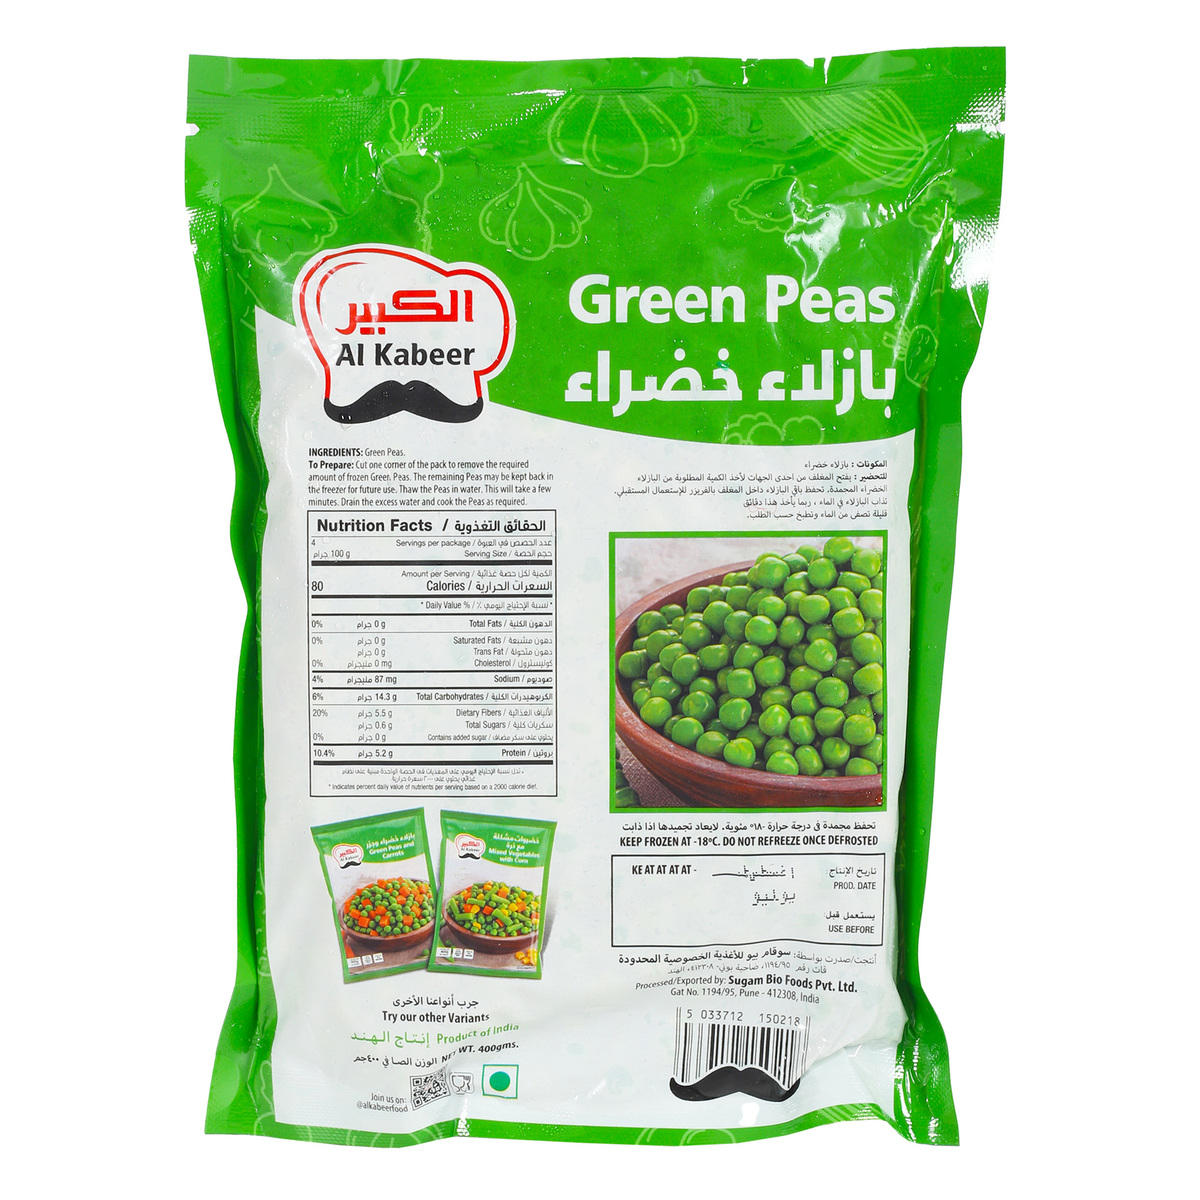 Al Kabeer Green Peas Value Pack 2 x 400 g